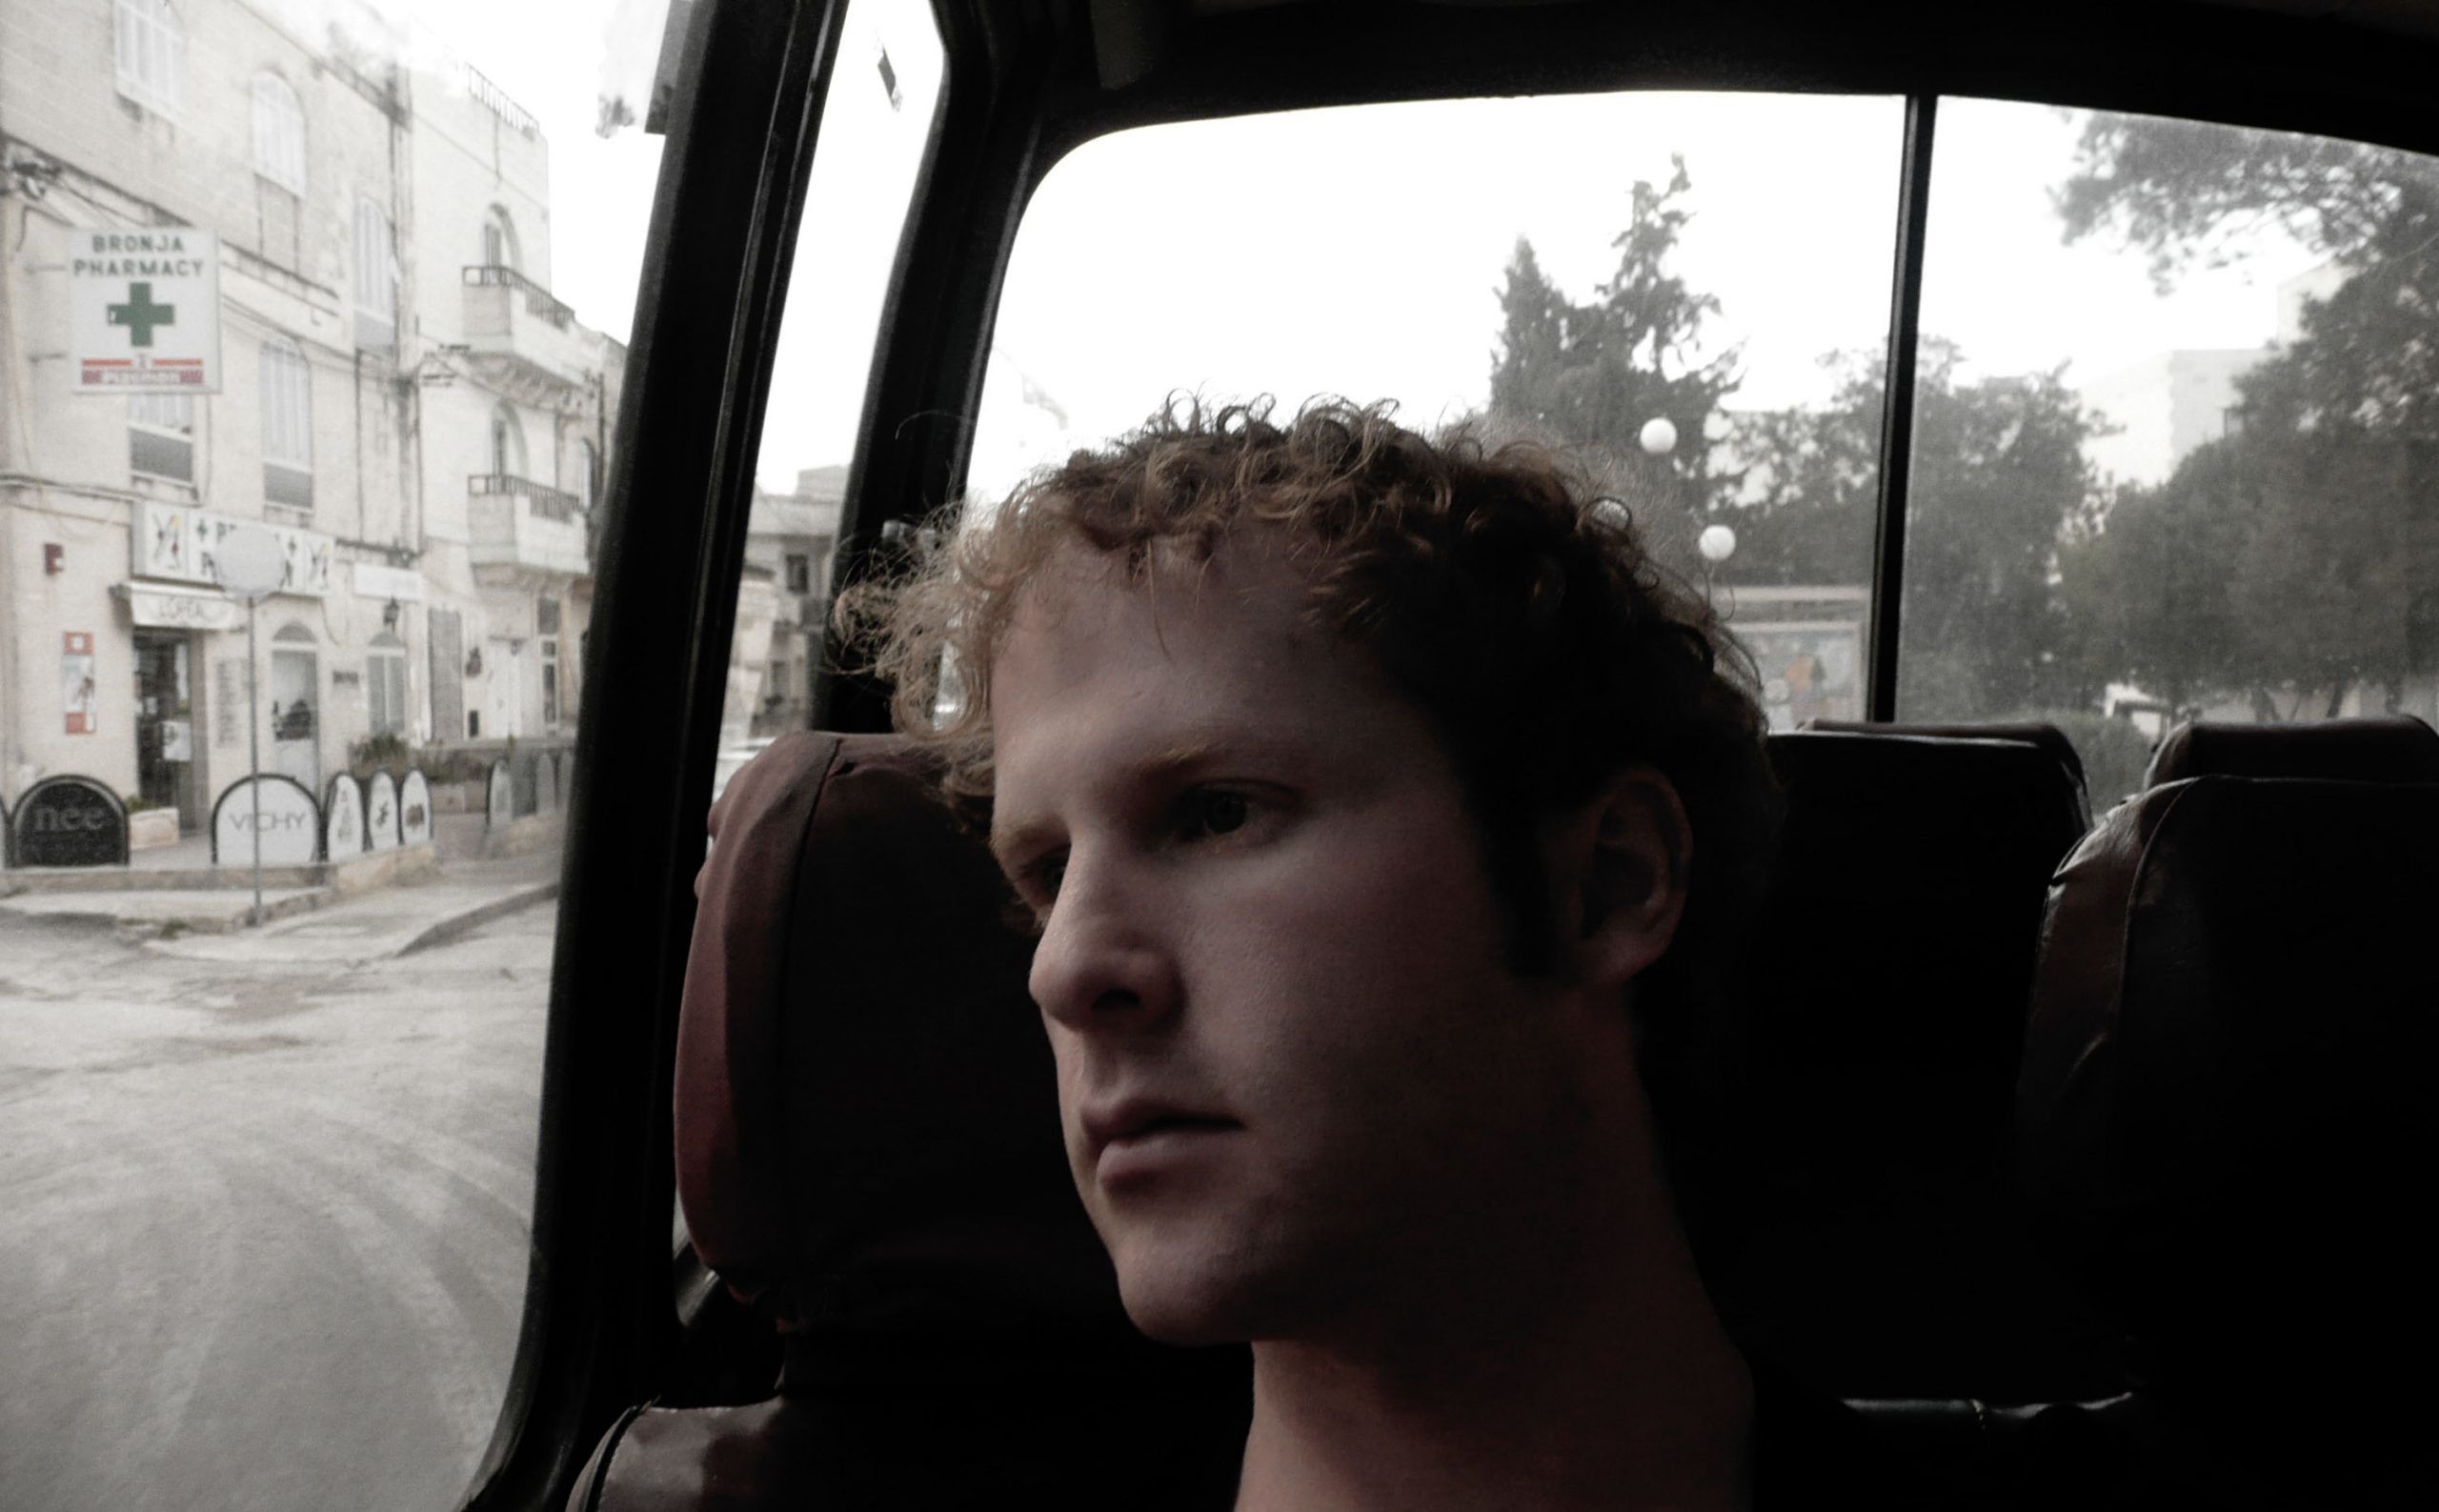 Ben riding orange public bus in Malta